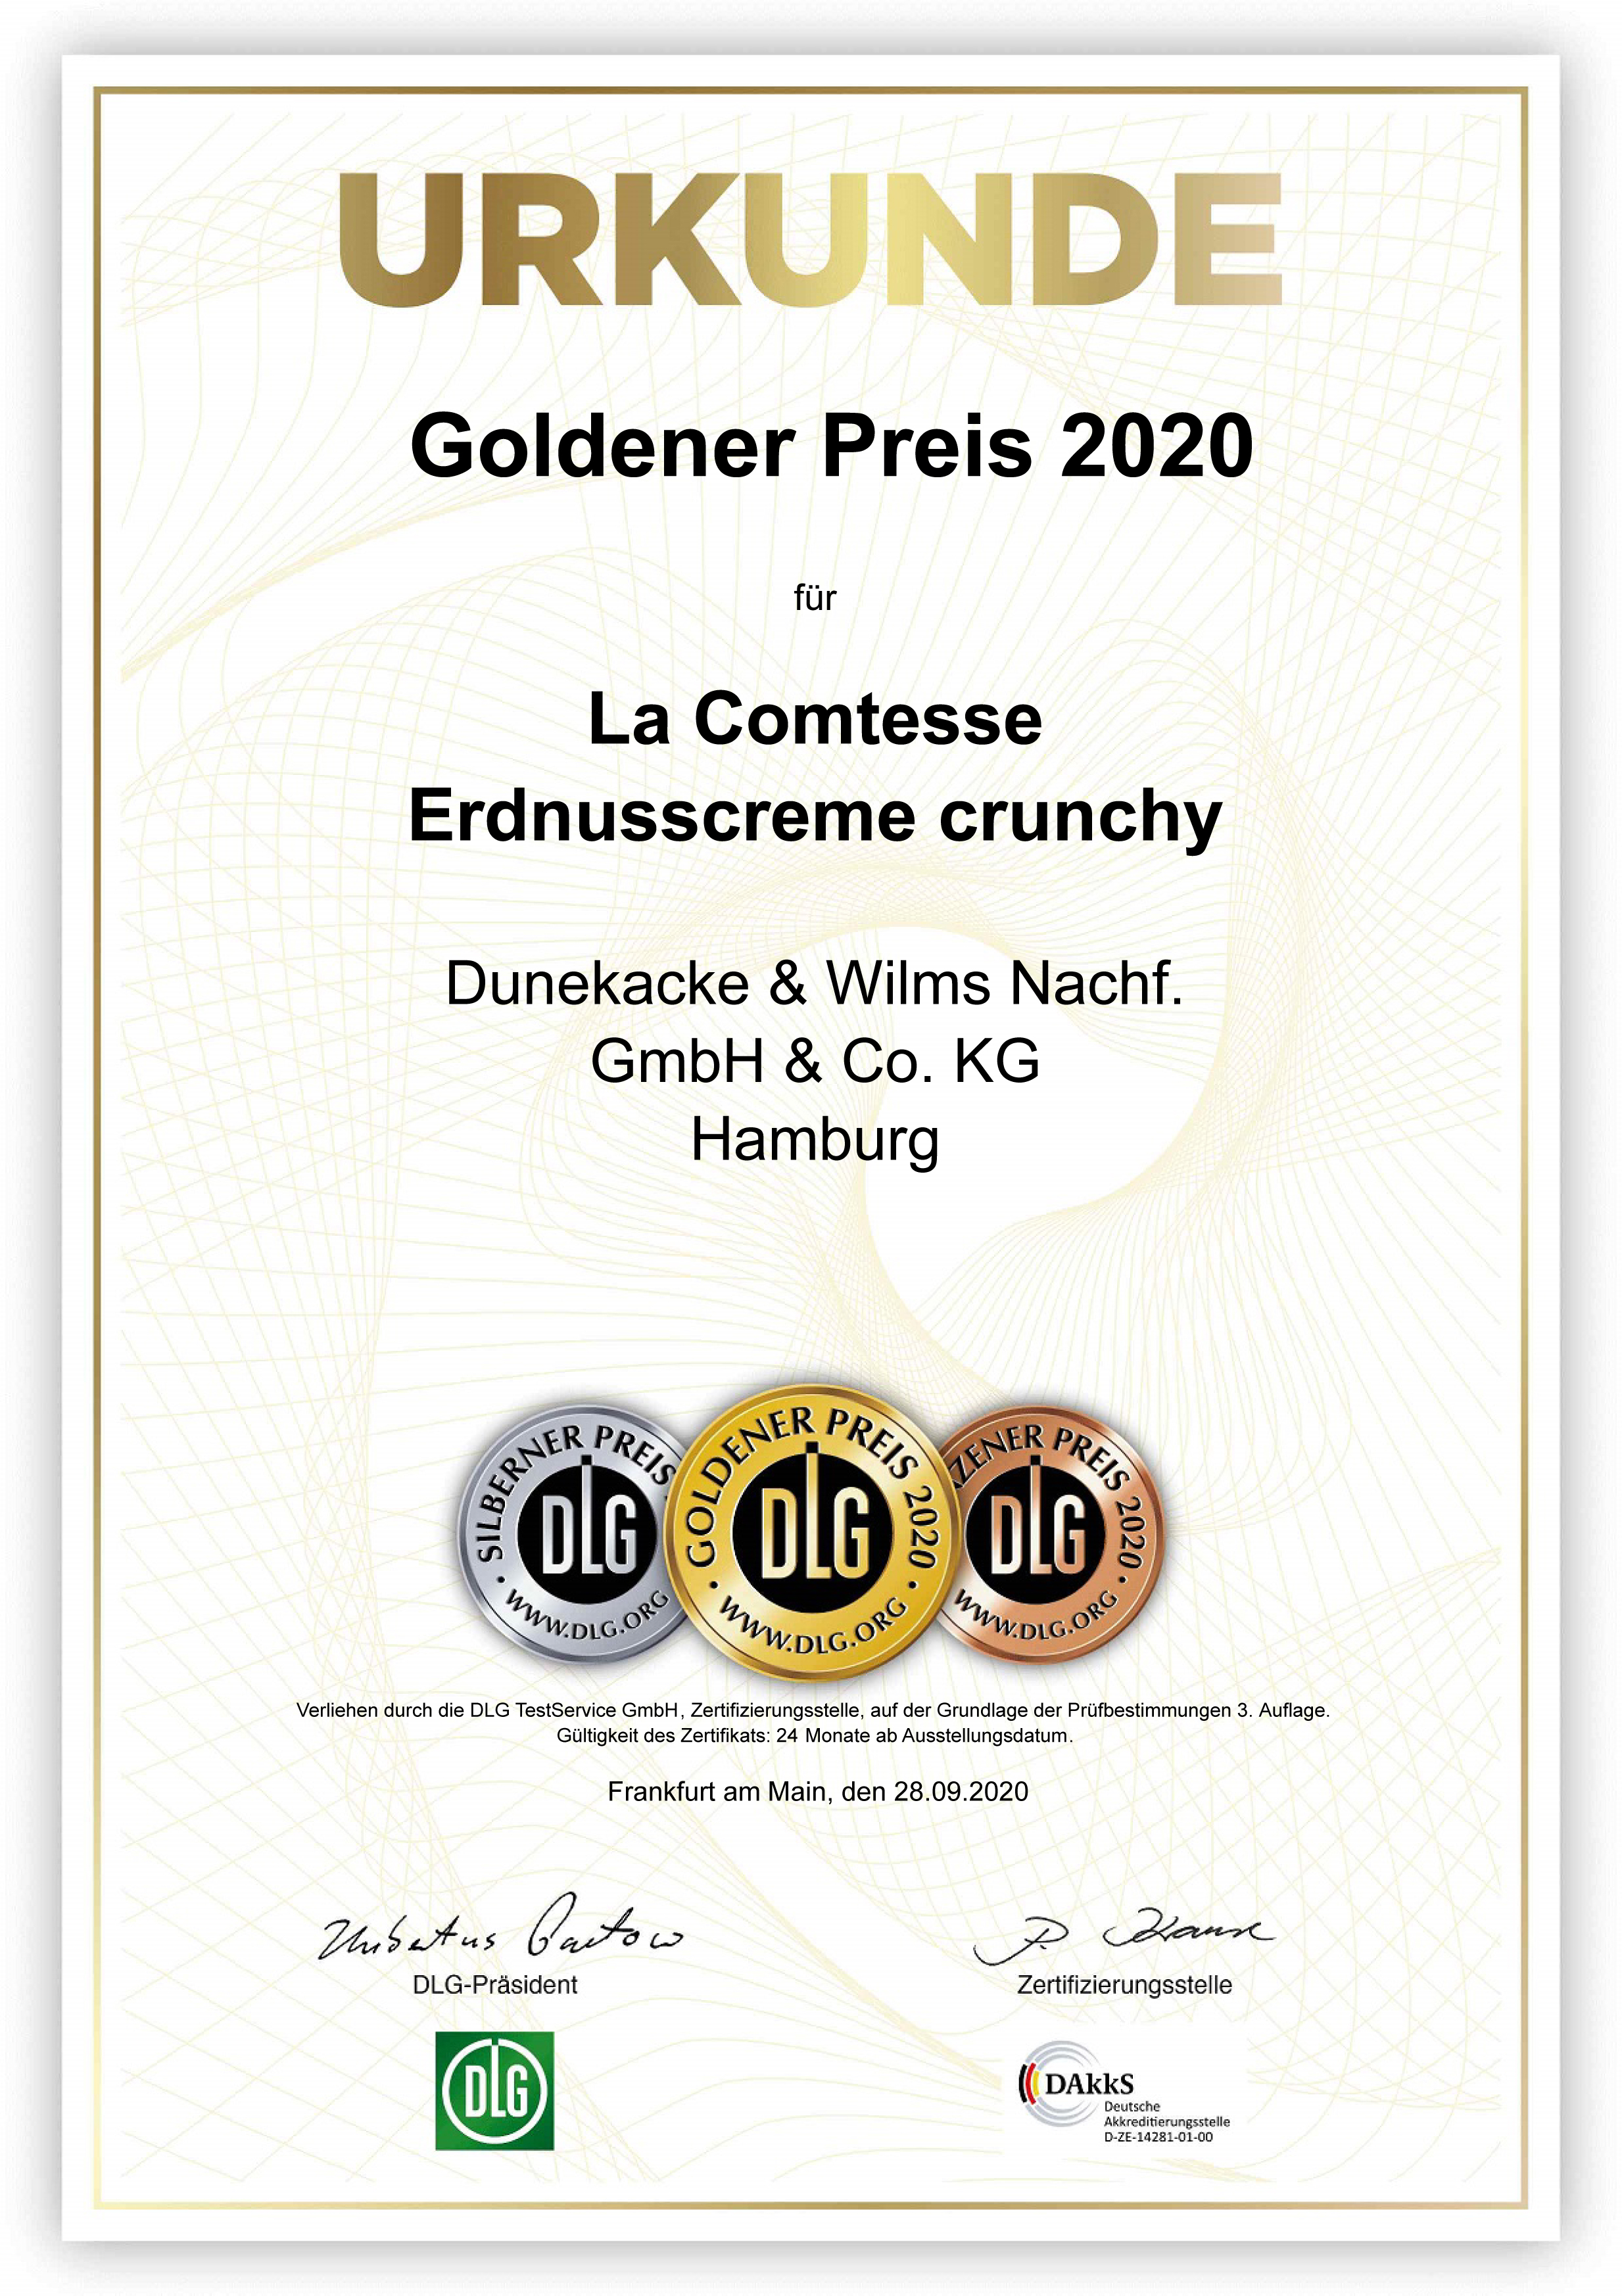 DLG-Pramierung GOLD, Erdnusscreme crunchy 2020, jetzt neu: Ausgezeichnete Qualität seit 2017